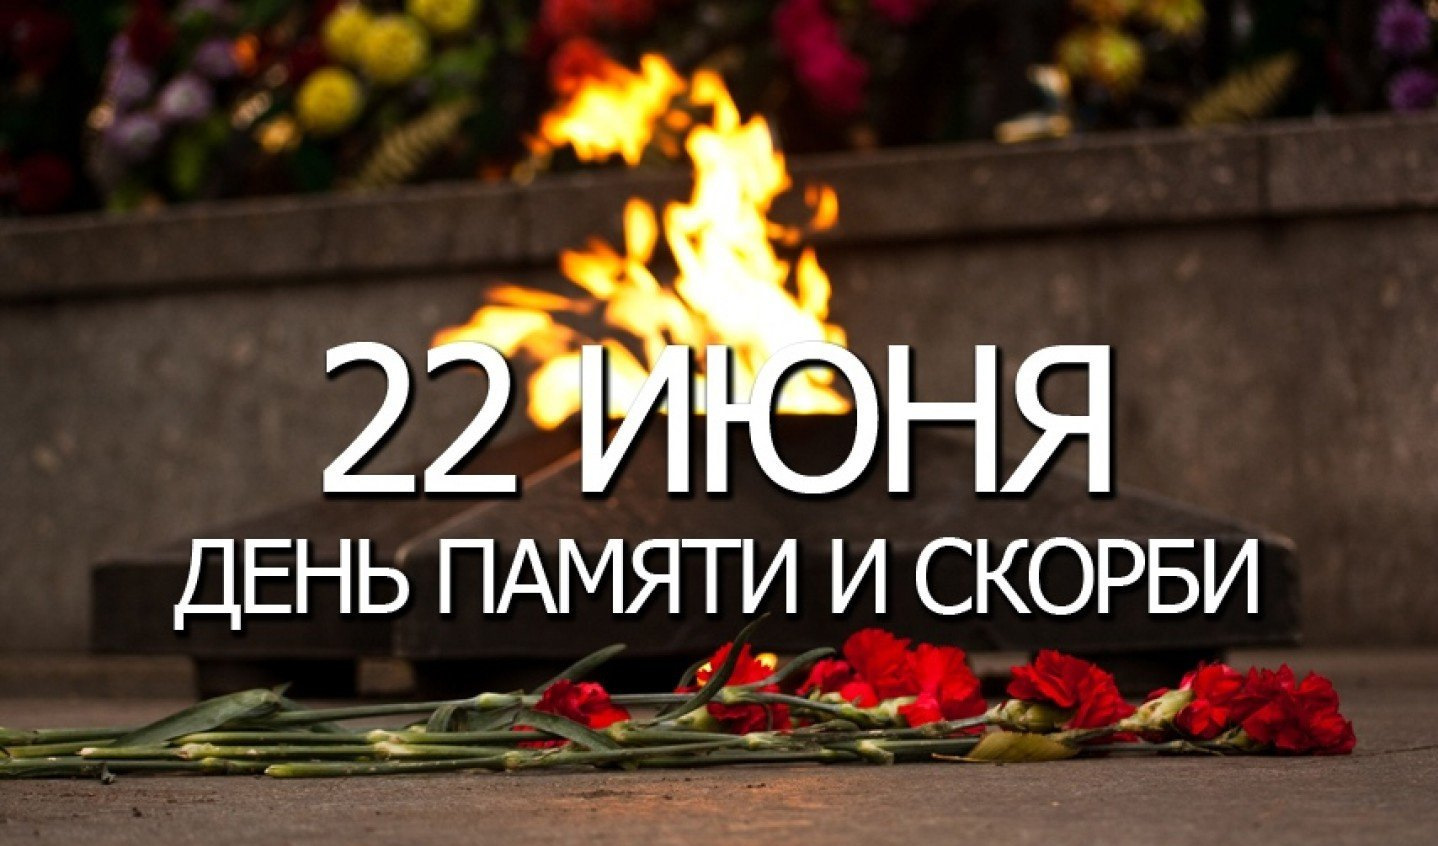 22 июня д. День памяти и скорби. 22 Июня день памяти. День памяти и скорби — день начала Великой Отечественной войны. День скорби 22 июня.